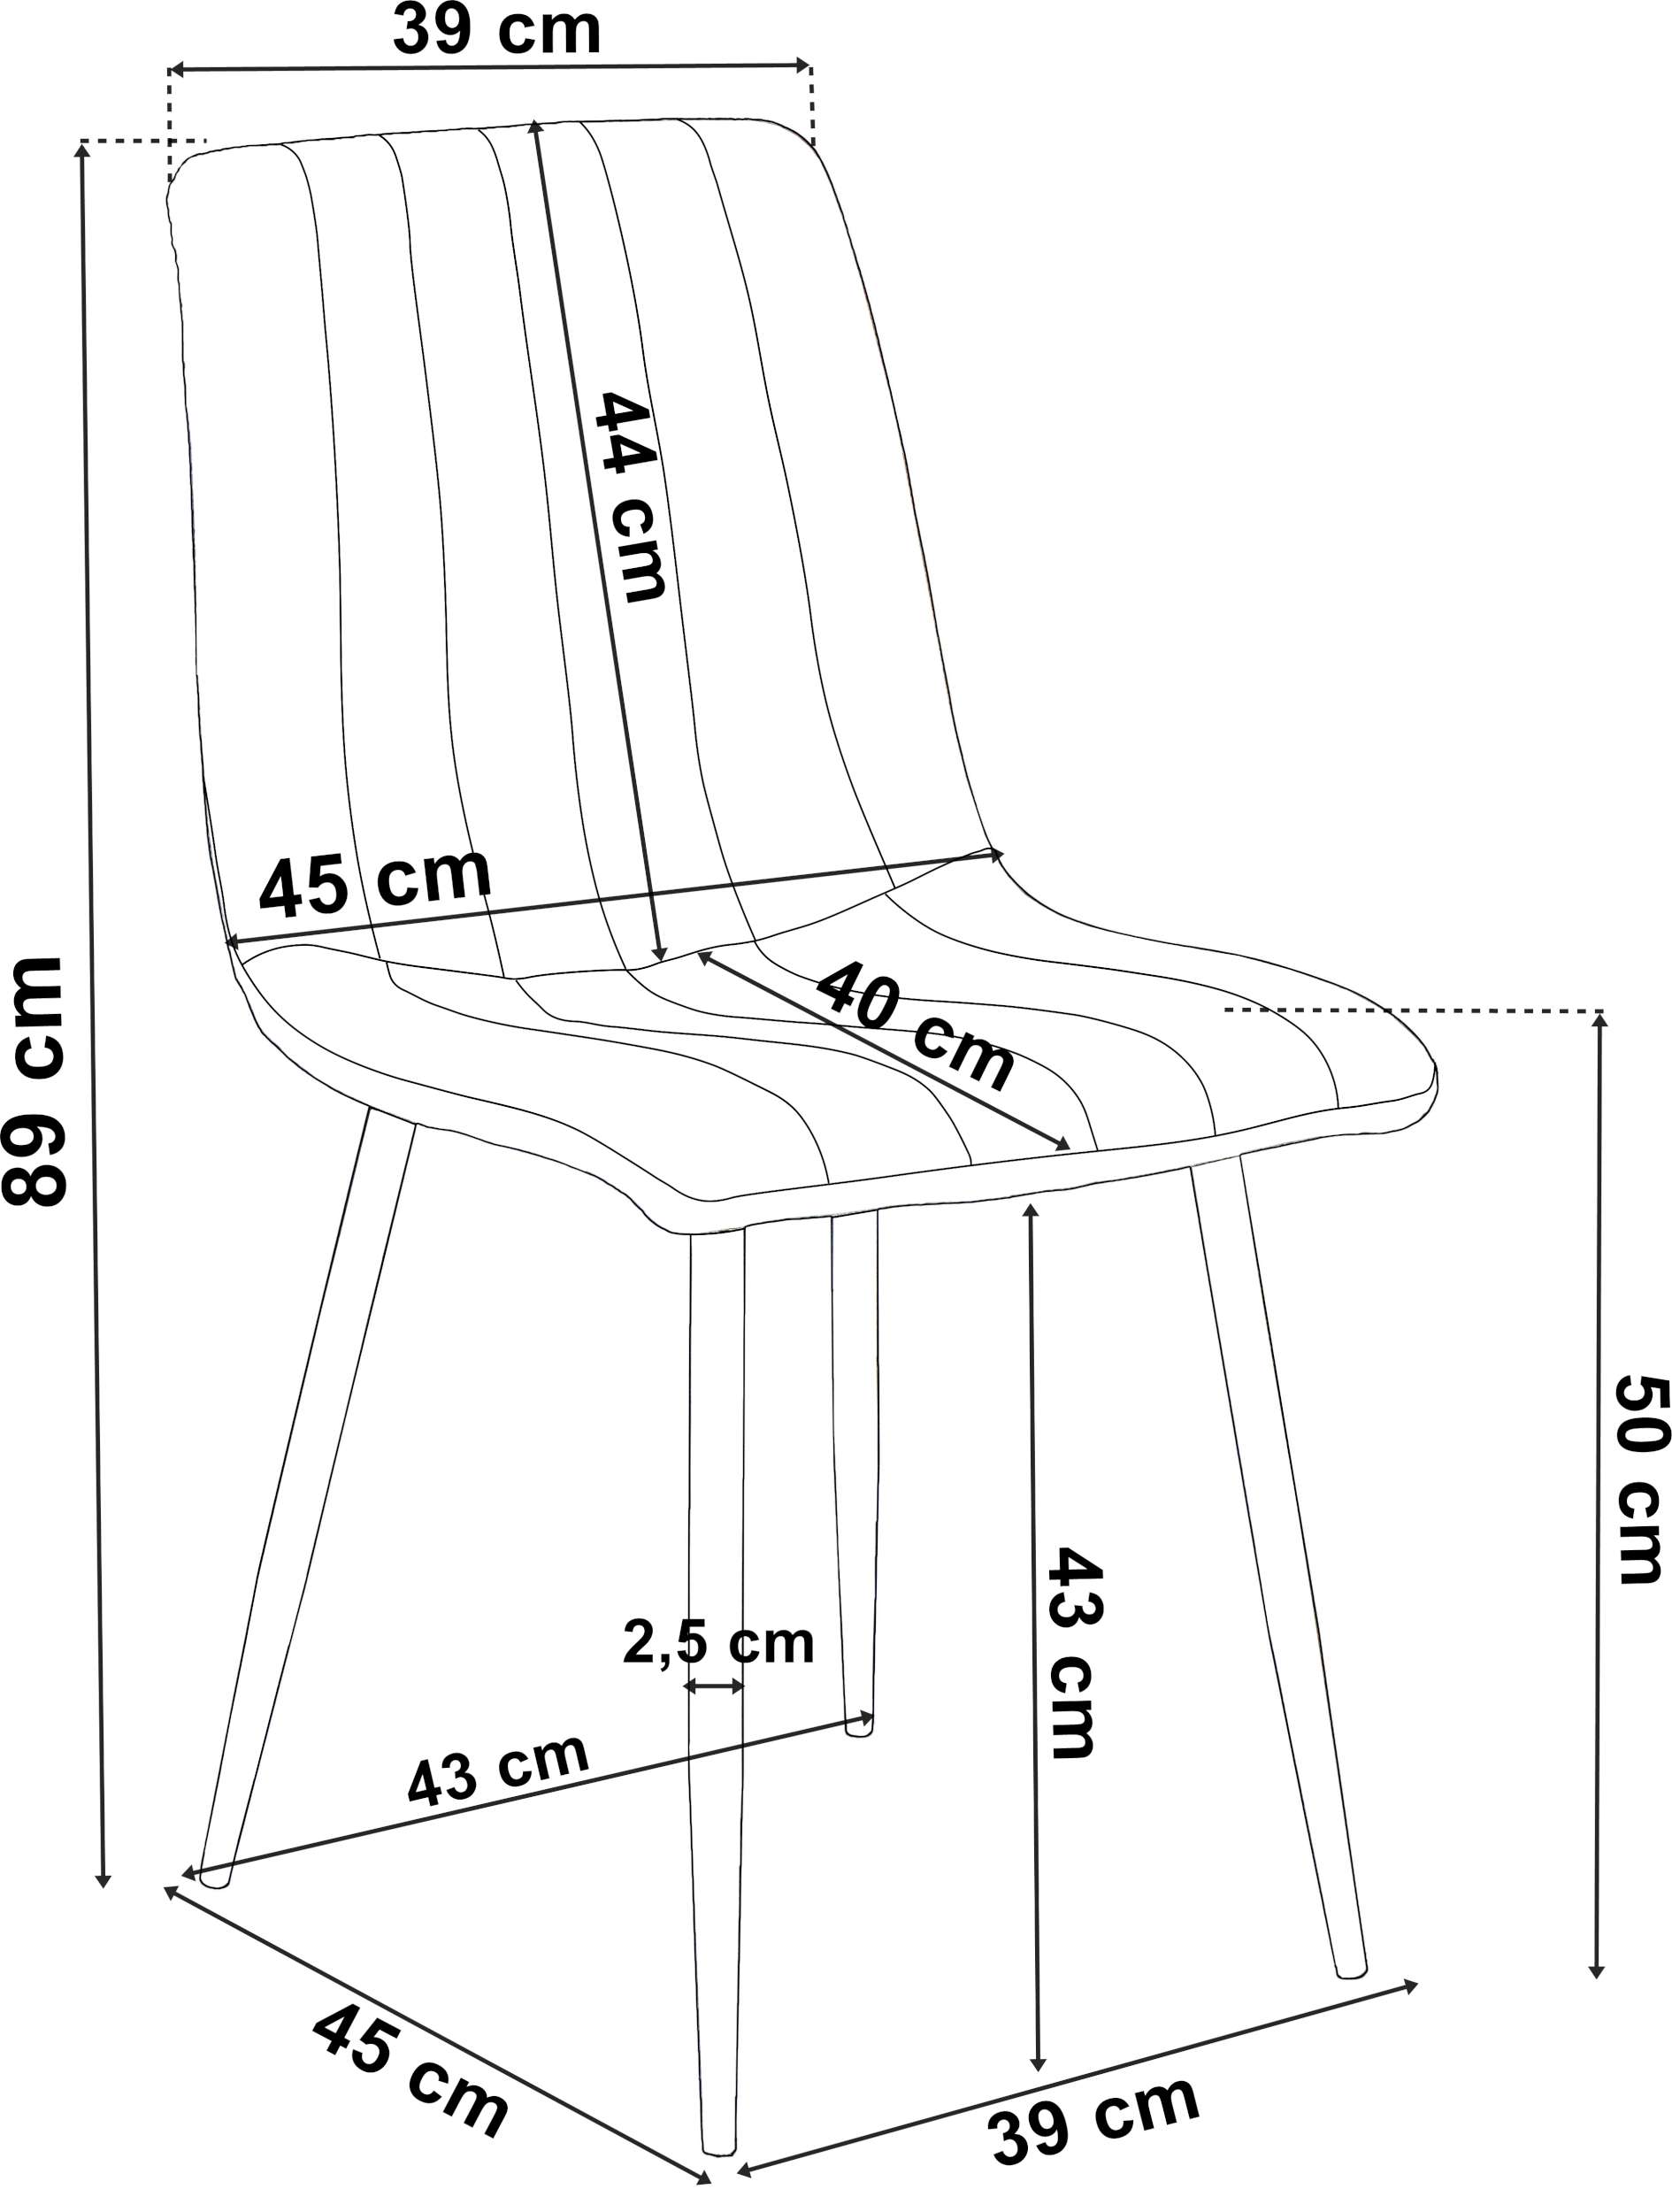 Krzesło nowoczesne aksamitne